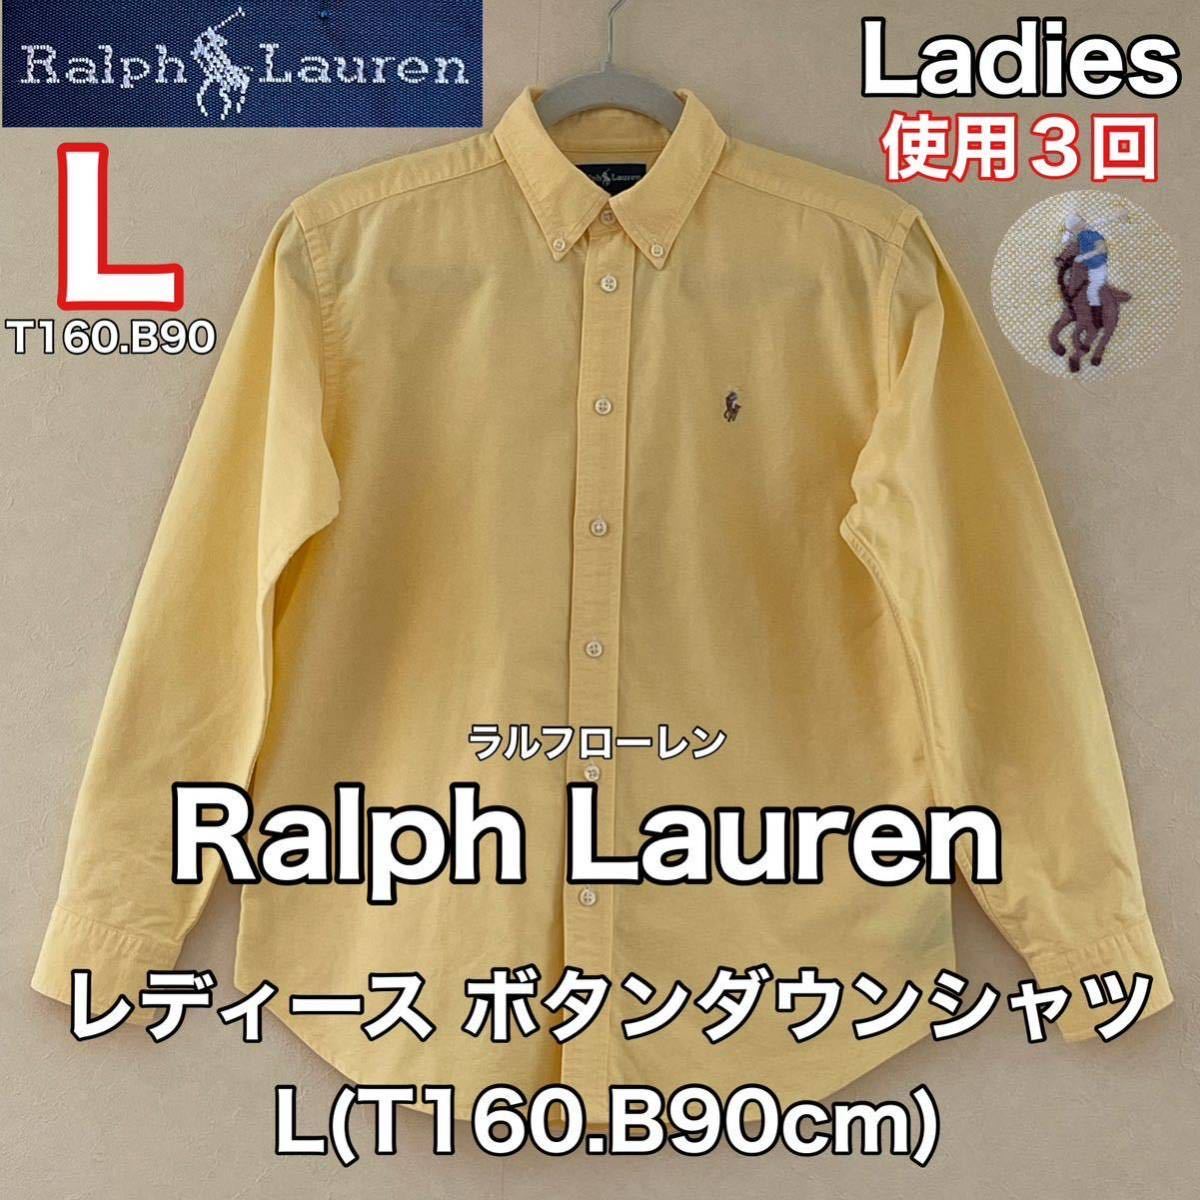 超美品 Ralph Lauren(ラルフローレン)レディース シャツ L(T160.B90cm)14 使用3回 イエロー 長袖 ボタンダウン  綿コットン 厚手 アウトドア